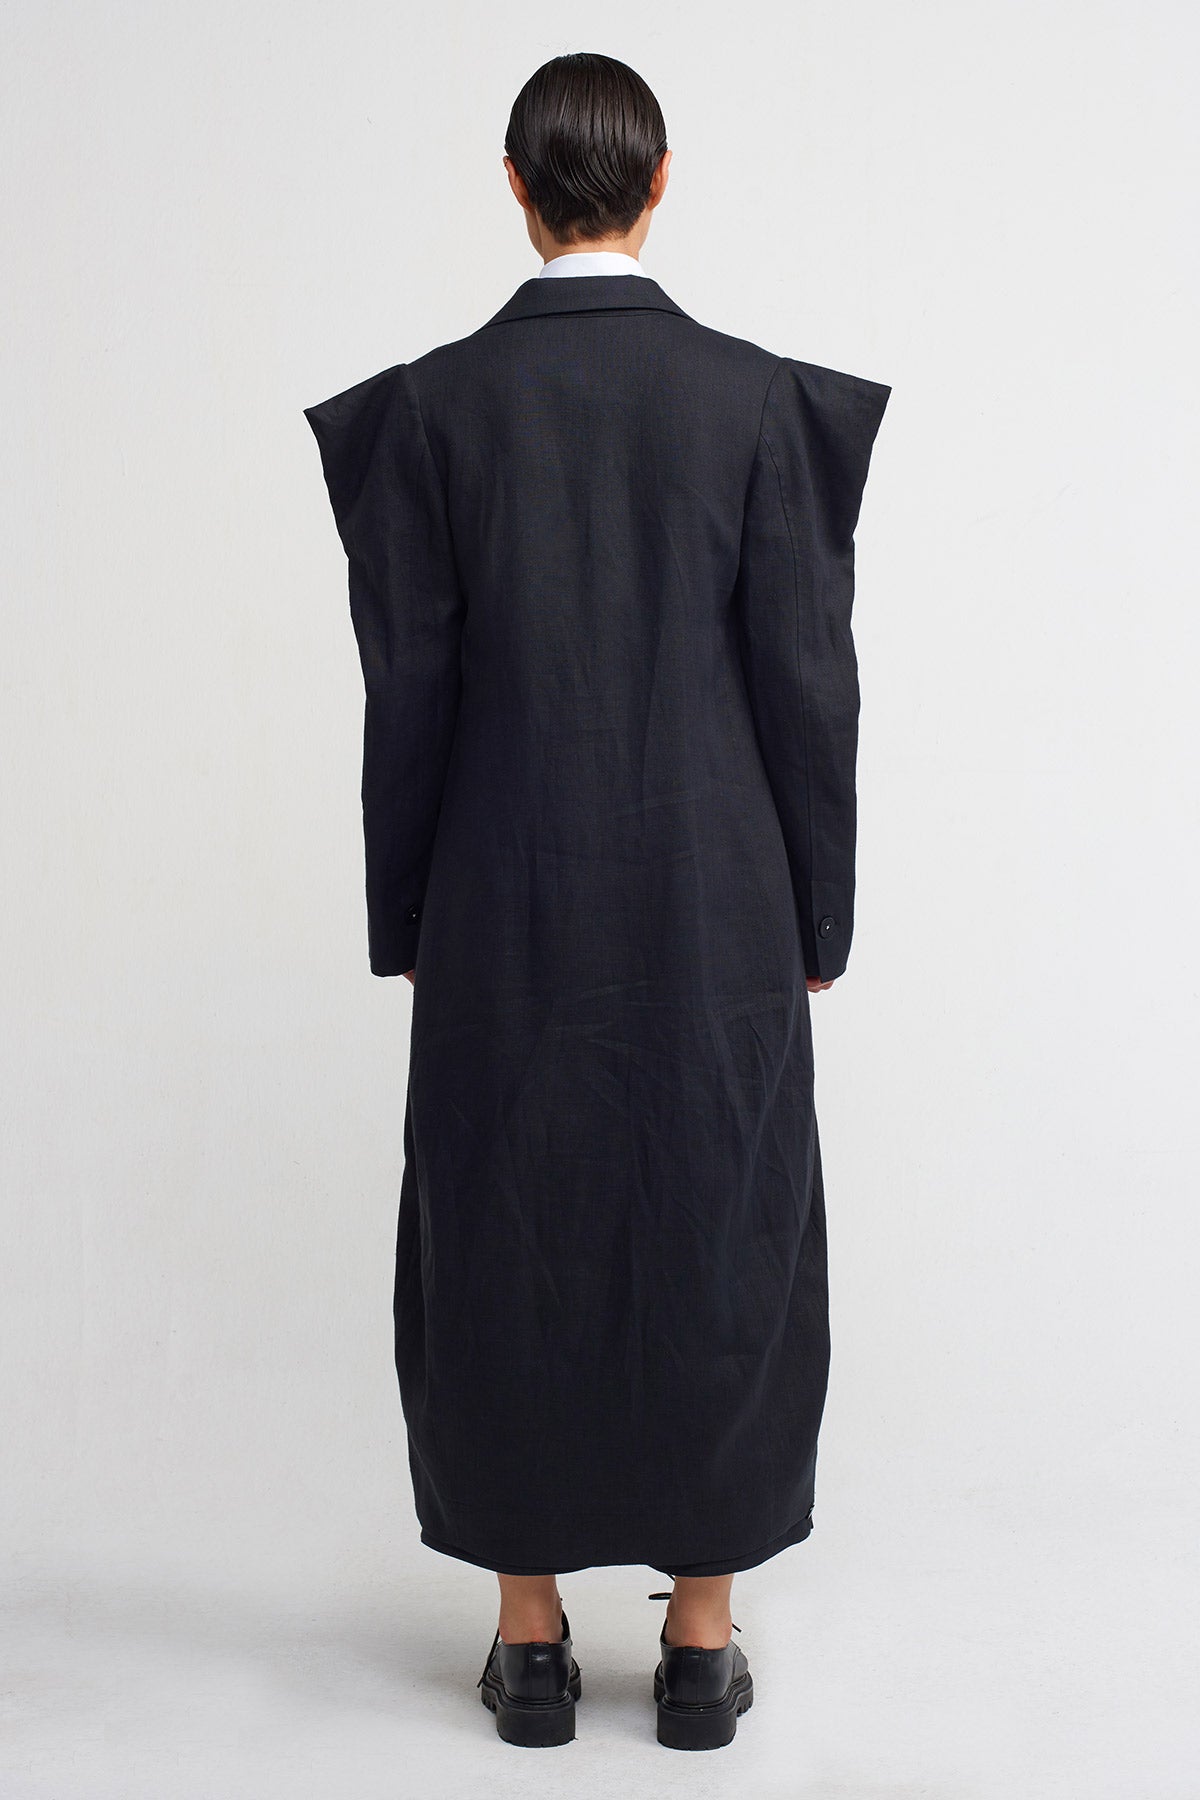 Black Square-Shouldered, Stitch-Detailed Long Linen Jacket-Y245015014